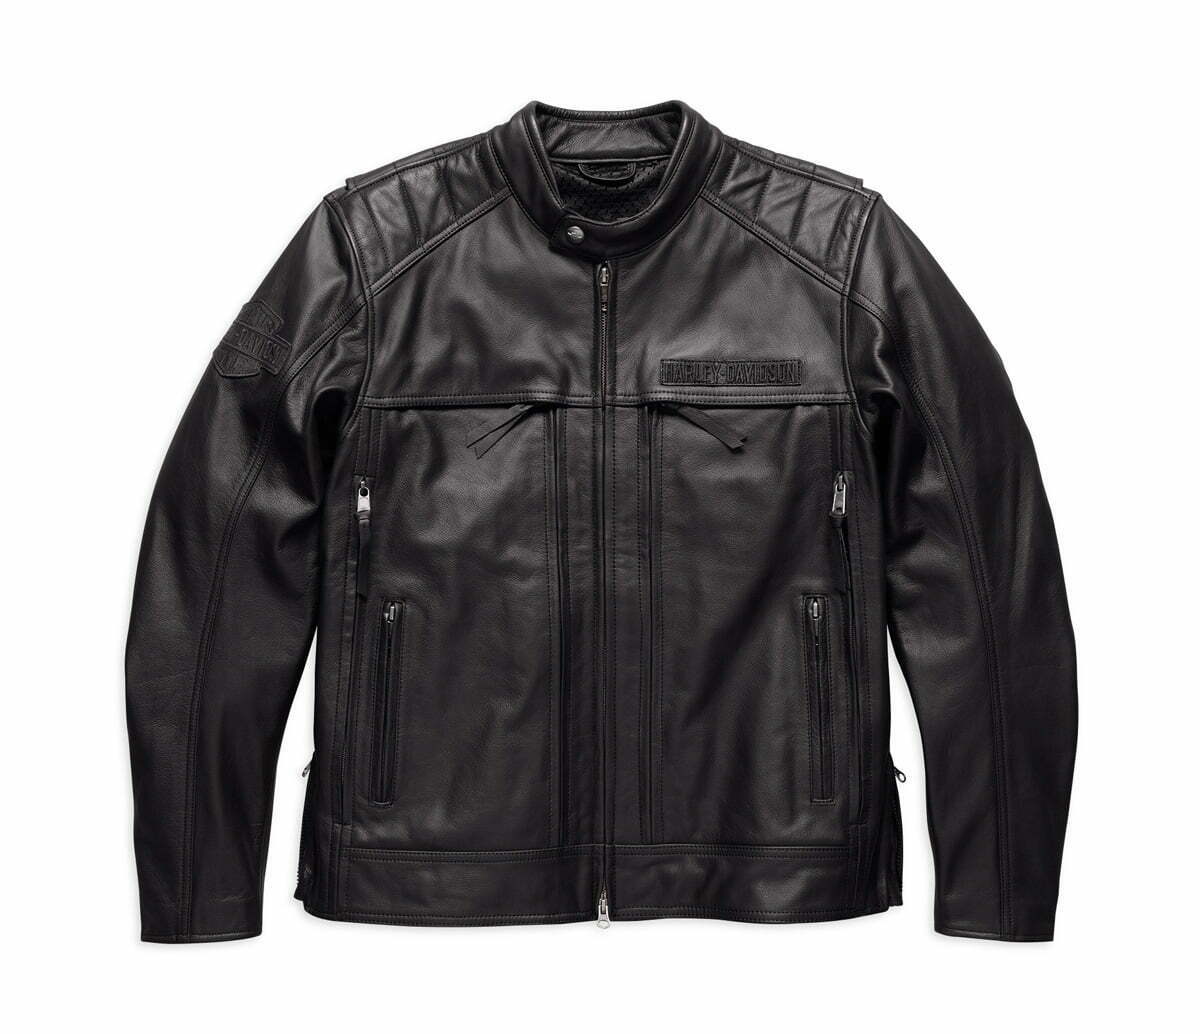 Harley Synthesis Pocket System Leather Jacket | Hot Bike Magazine